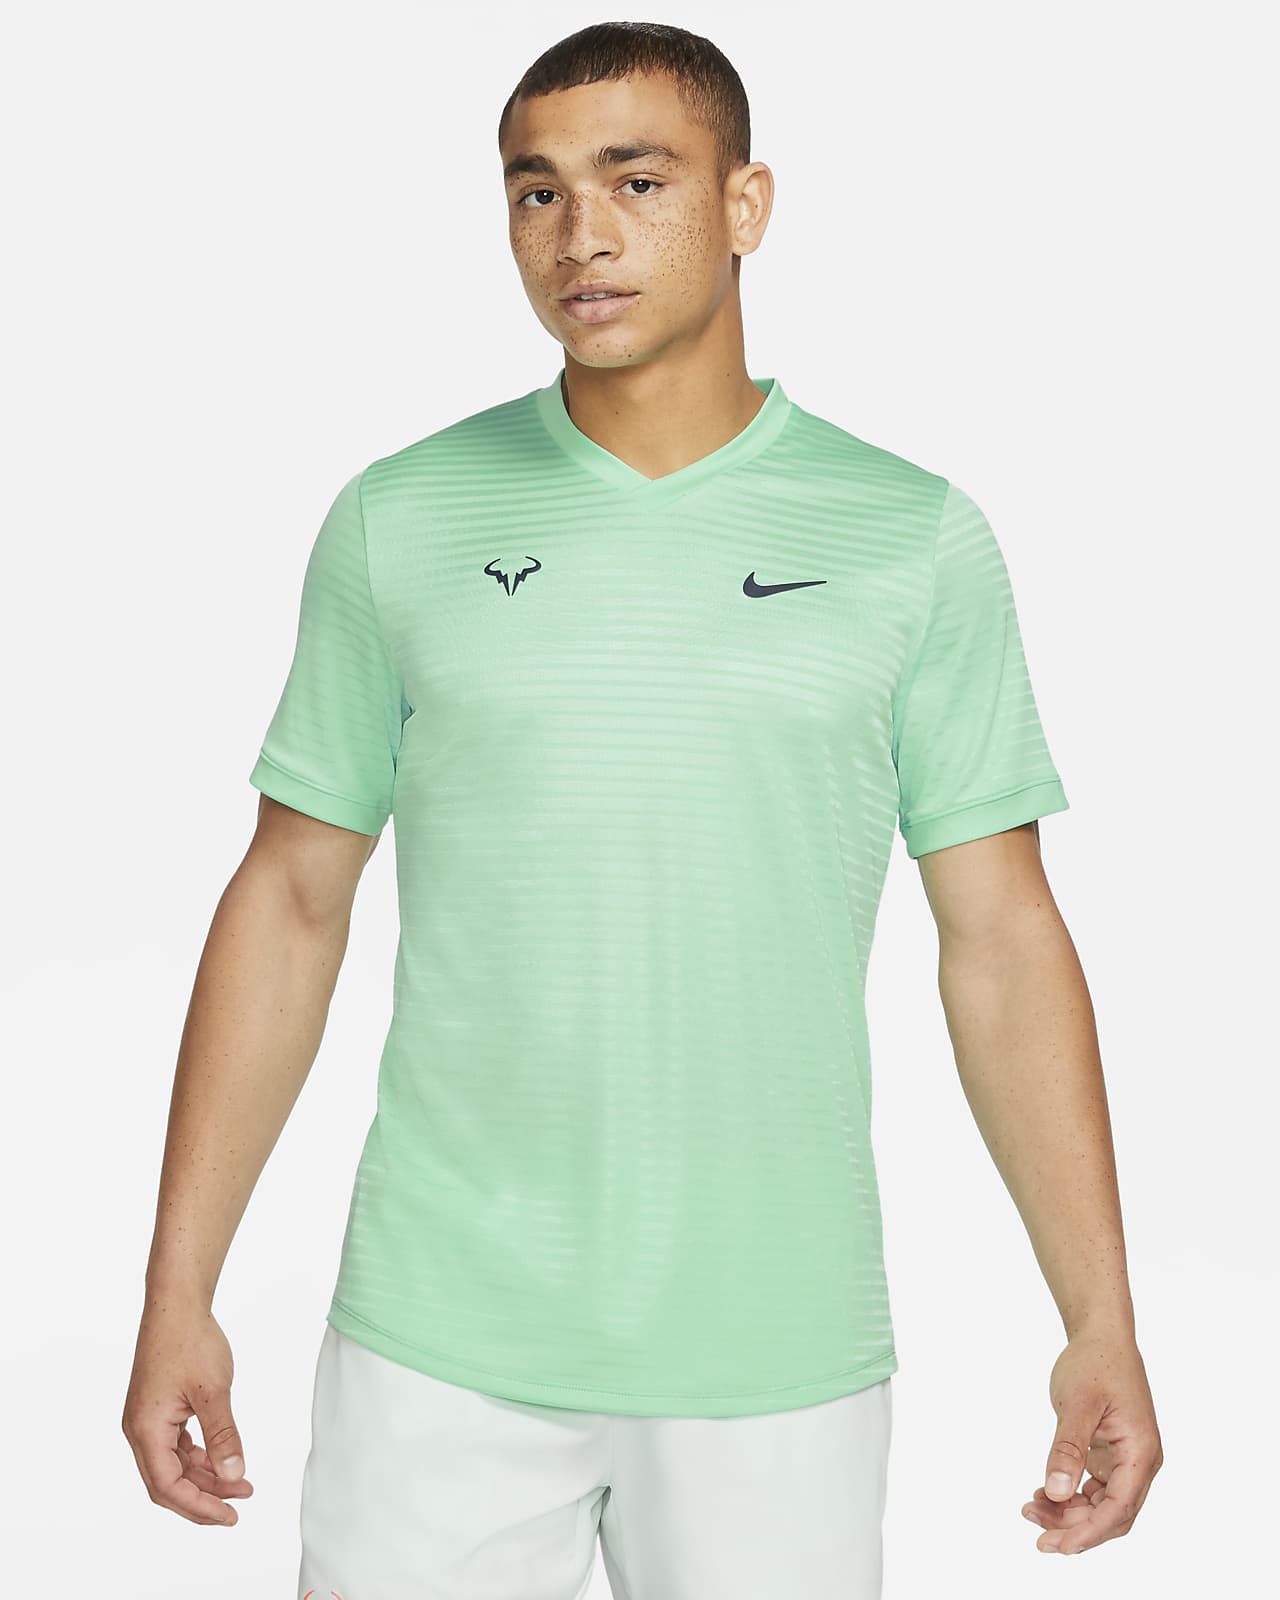 Short-Sleeve Tennis Top. Nike LU